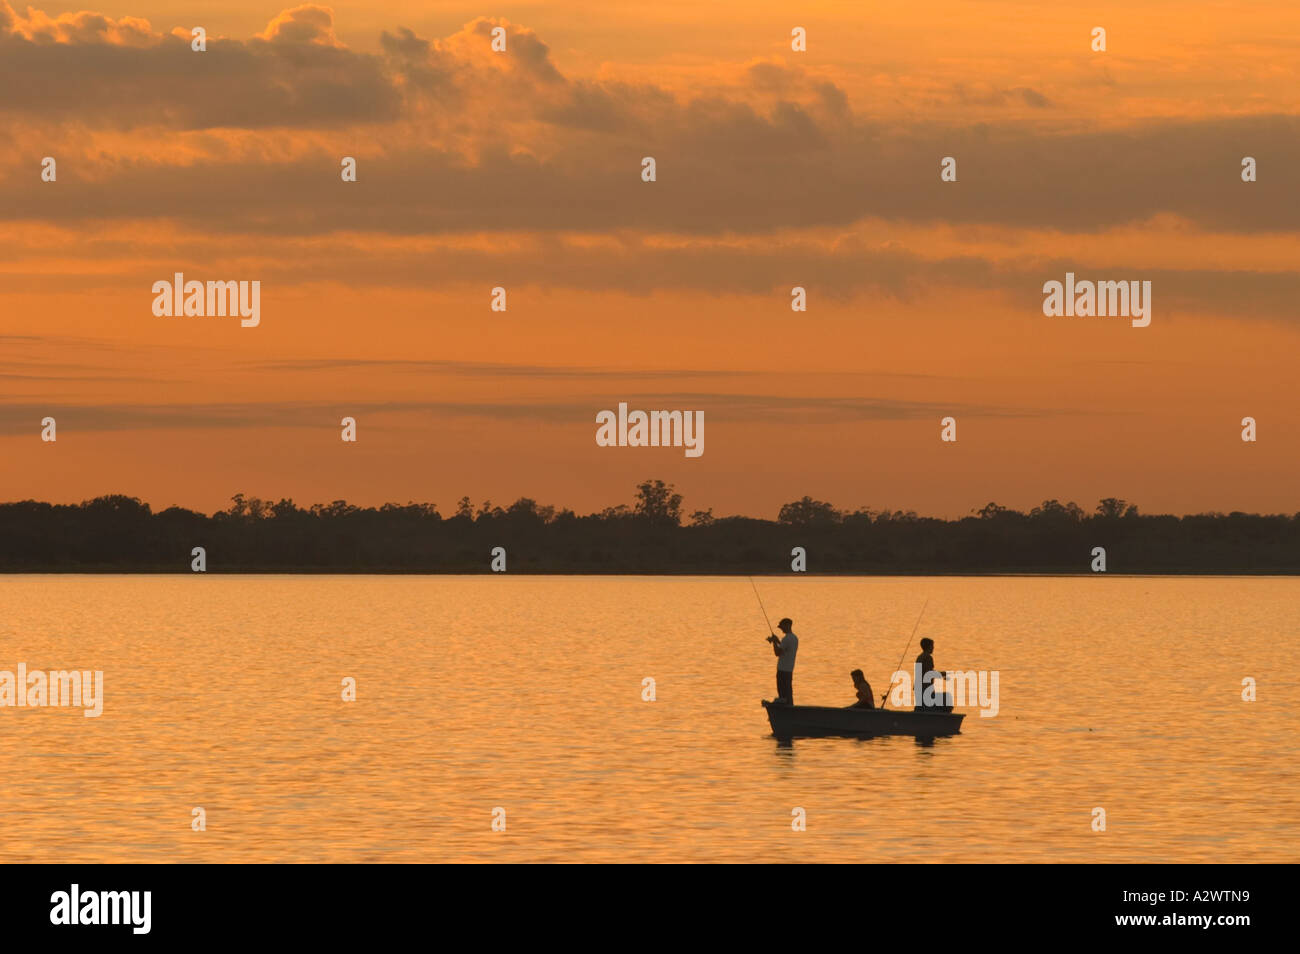 FISHING AT SUNSET IN UPPER MYAKKA LAKE IN MYAKKA RIVER STATE PARK FLORIDA Stock Photo